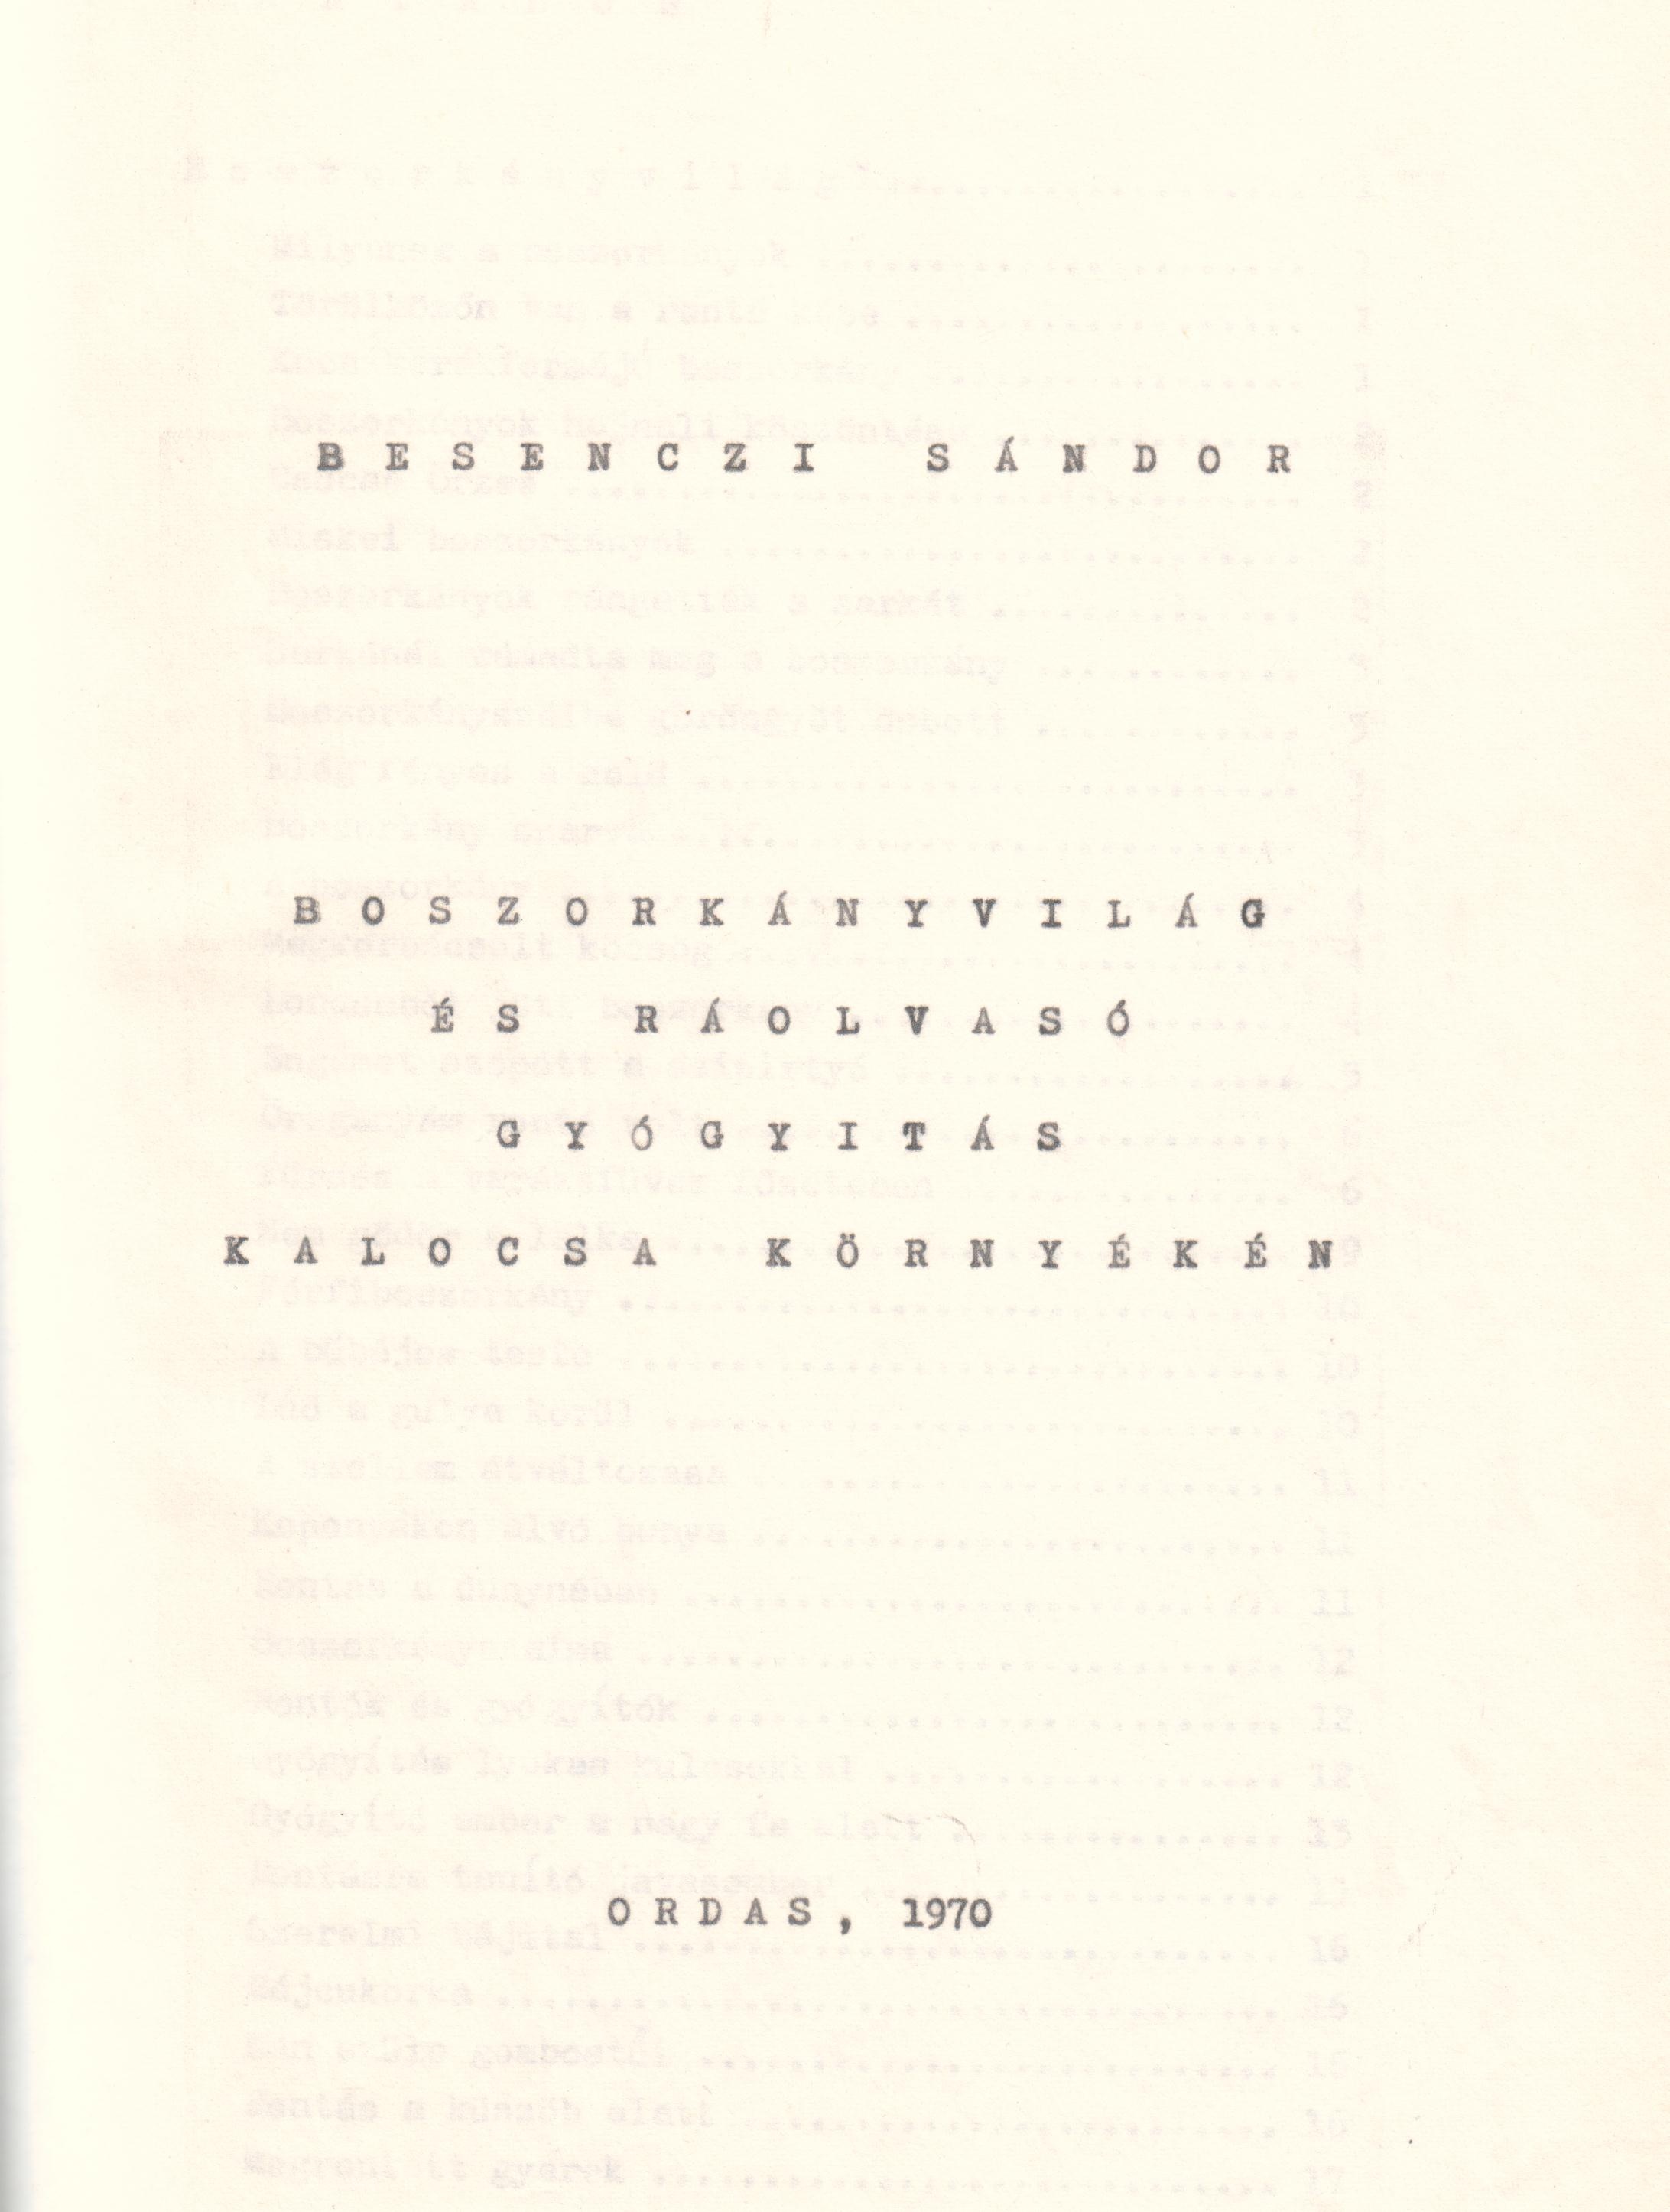 Boszorkányvilág és ráolvasó gyógyítás Kalocsa környékén c. pályázat gépirata. (Viski Károly Múzeum Kalocsa RR-F)